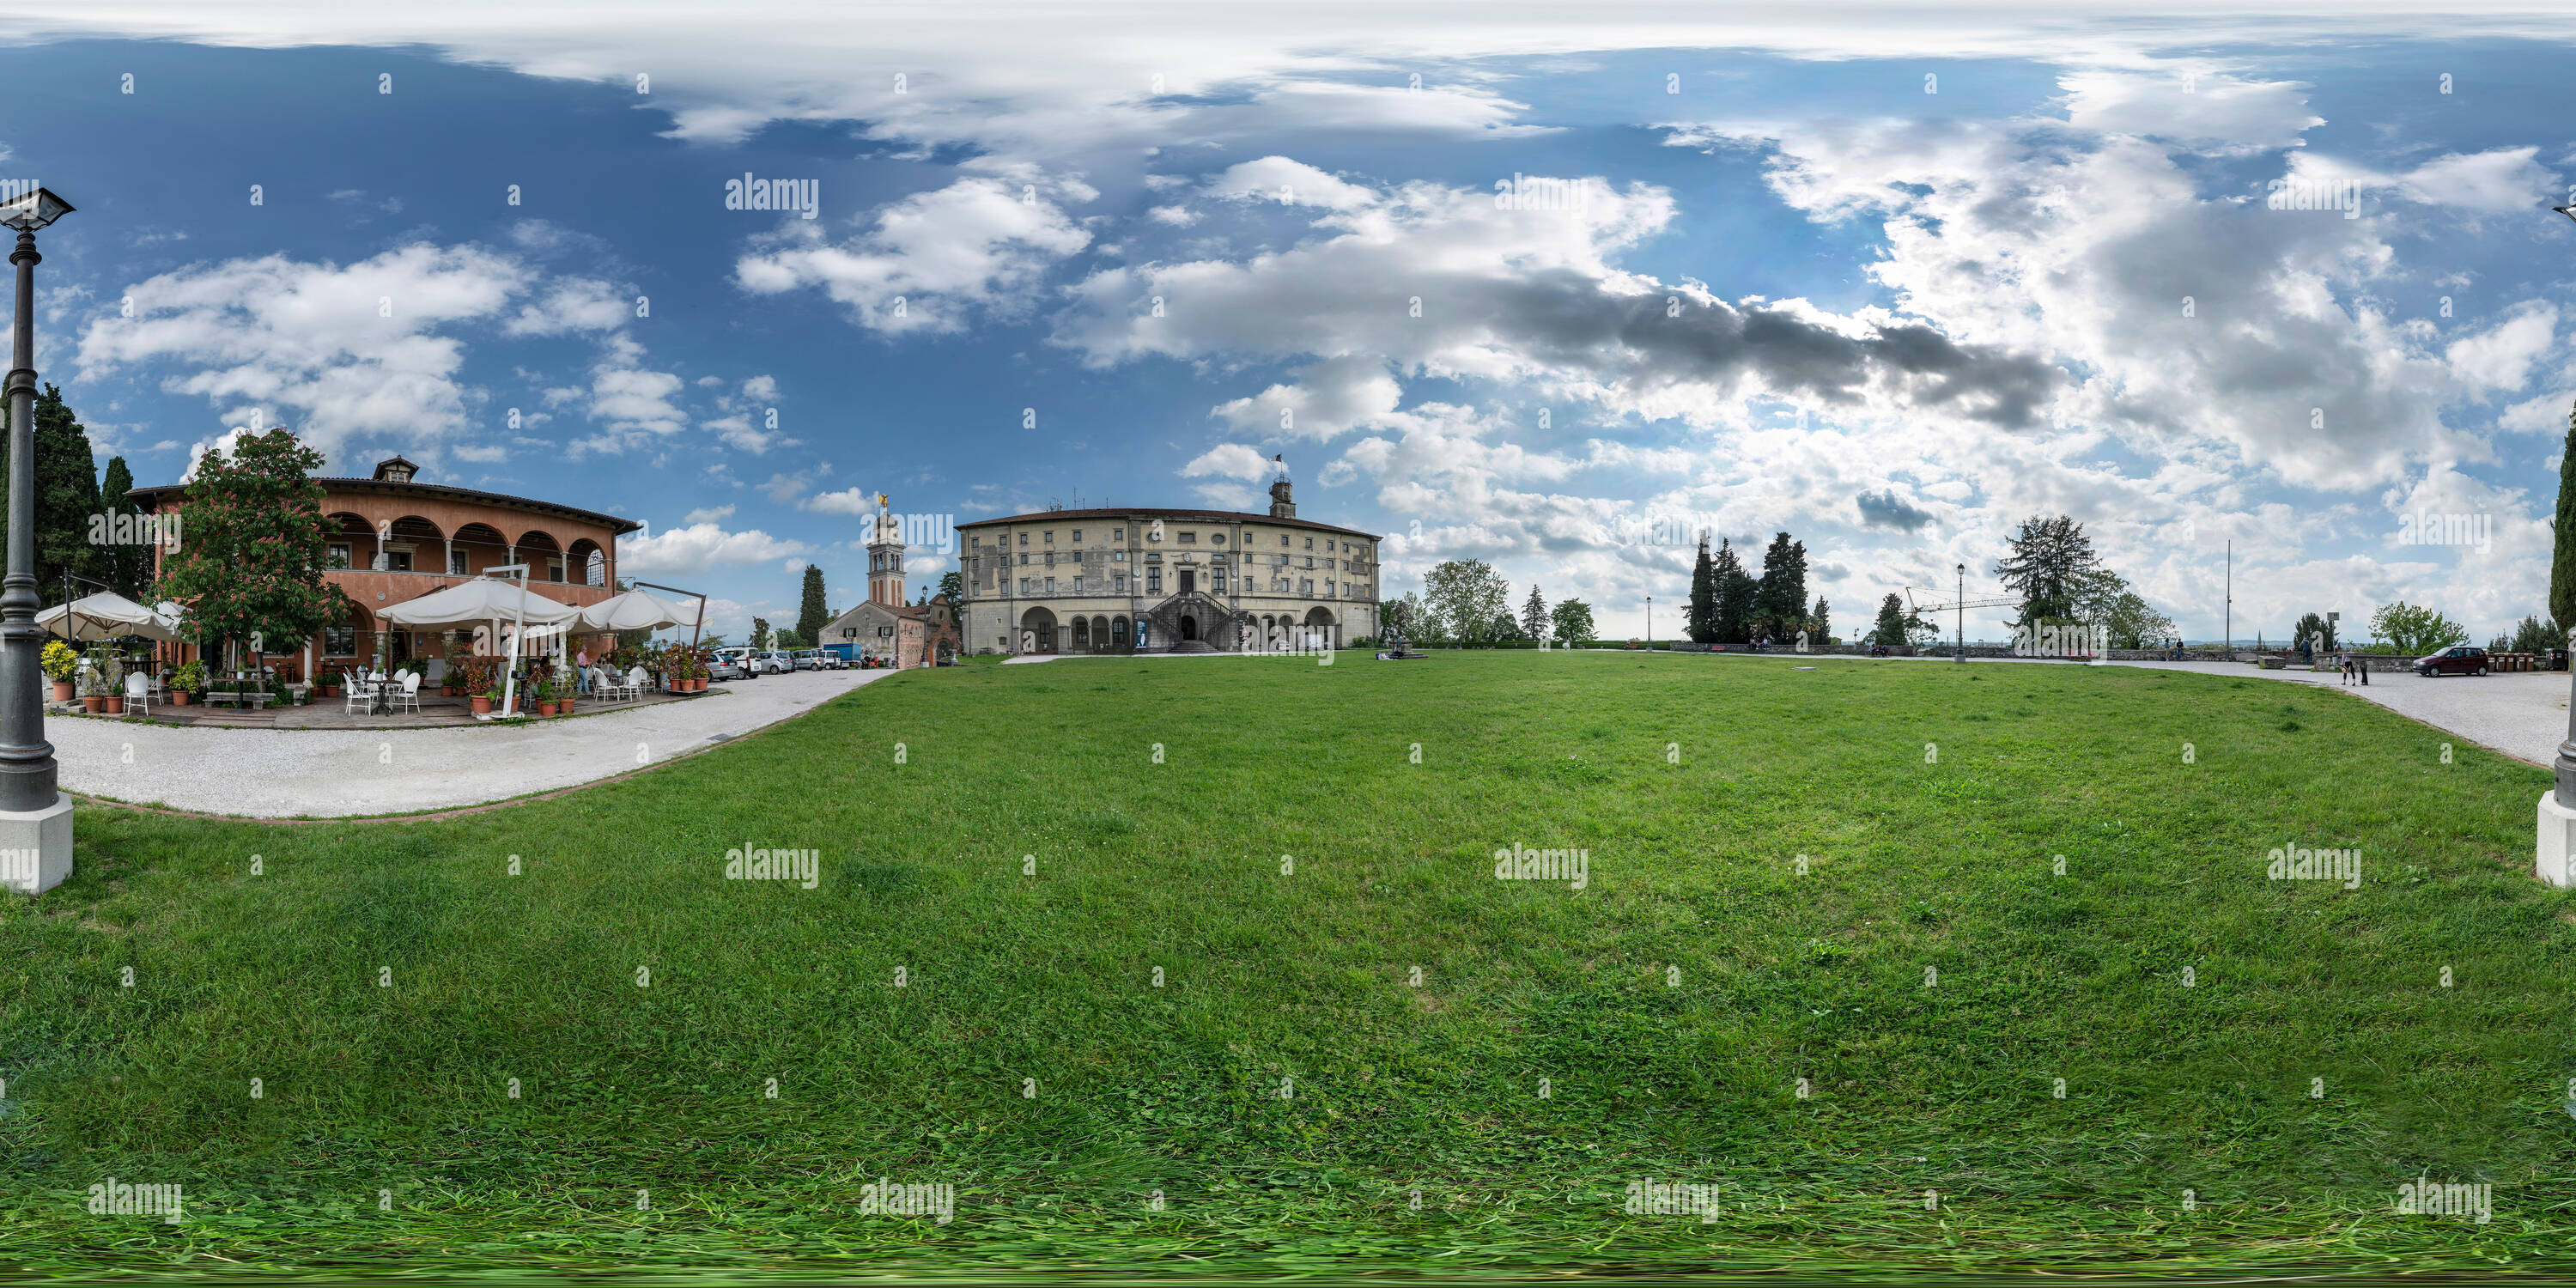 Visualizzazione panoramica a 360 gradi di Udine, Italia. Maggio 2019. 360° dell'immagine. Vista panoramica della piazza davanti al castello di Udine